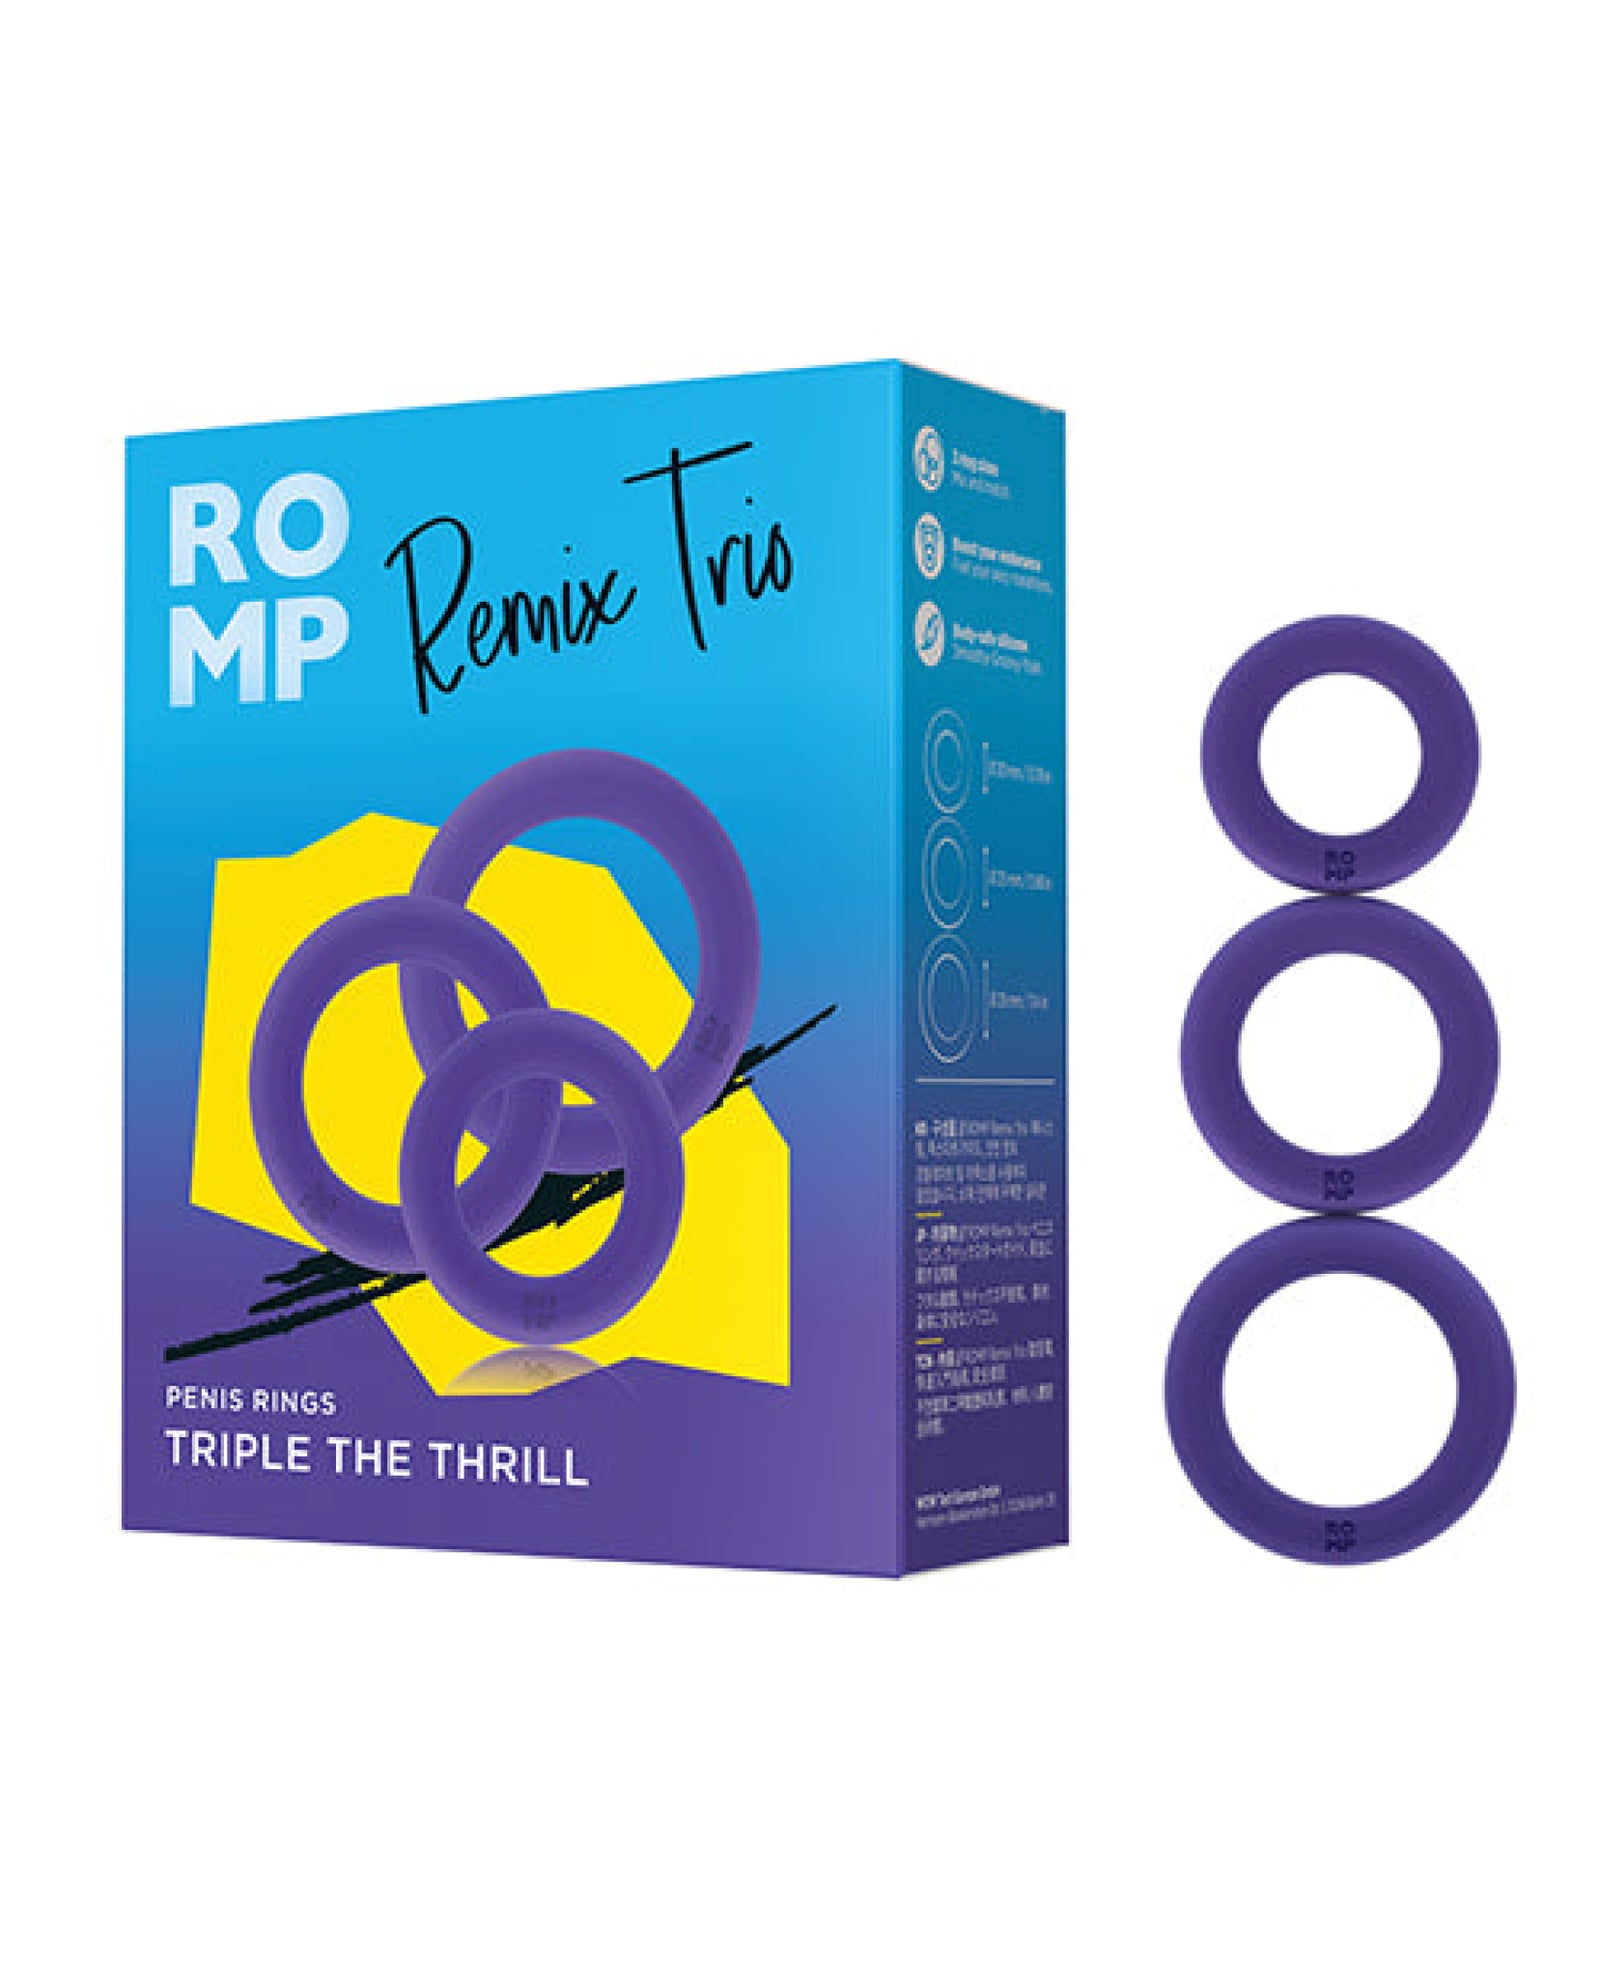 Romp Remix Trio Penis Ring Set of 3 - Purple Romp